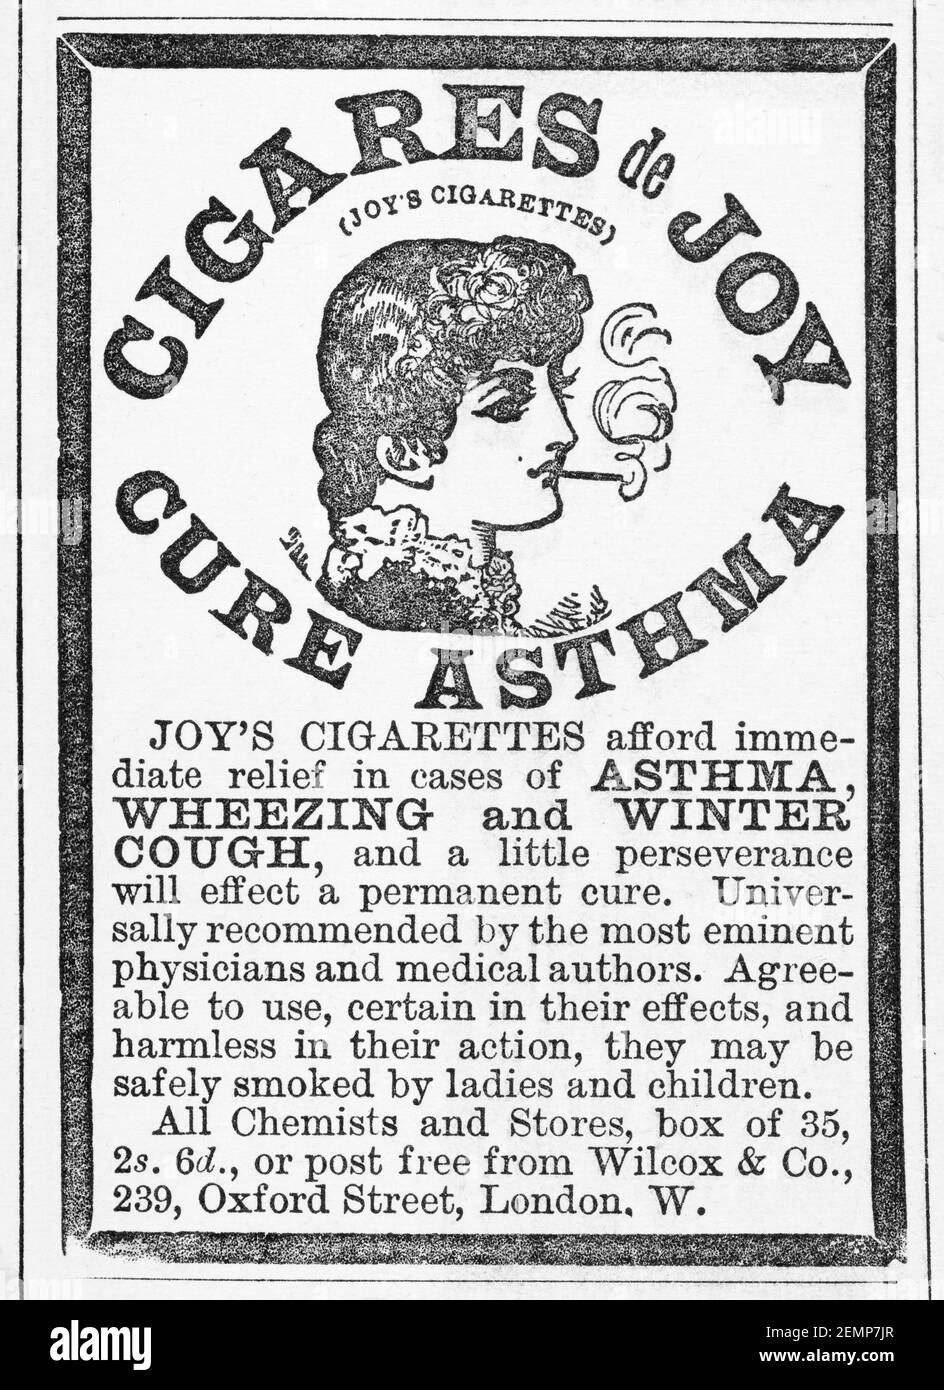 Alte viktorianische Zeitschrift Zeitungspapier medizinische Datura Zigarette medizinische Anzeige (Anti-Asthma) von 1895 - vor Werbestandards. Anamnese. Stockfoto